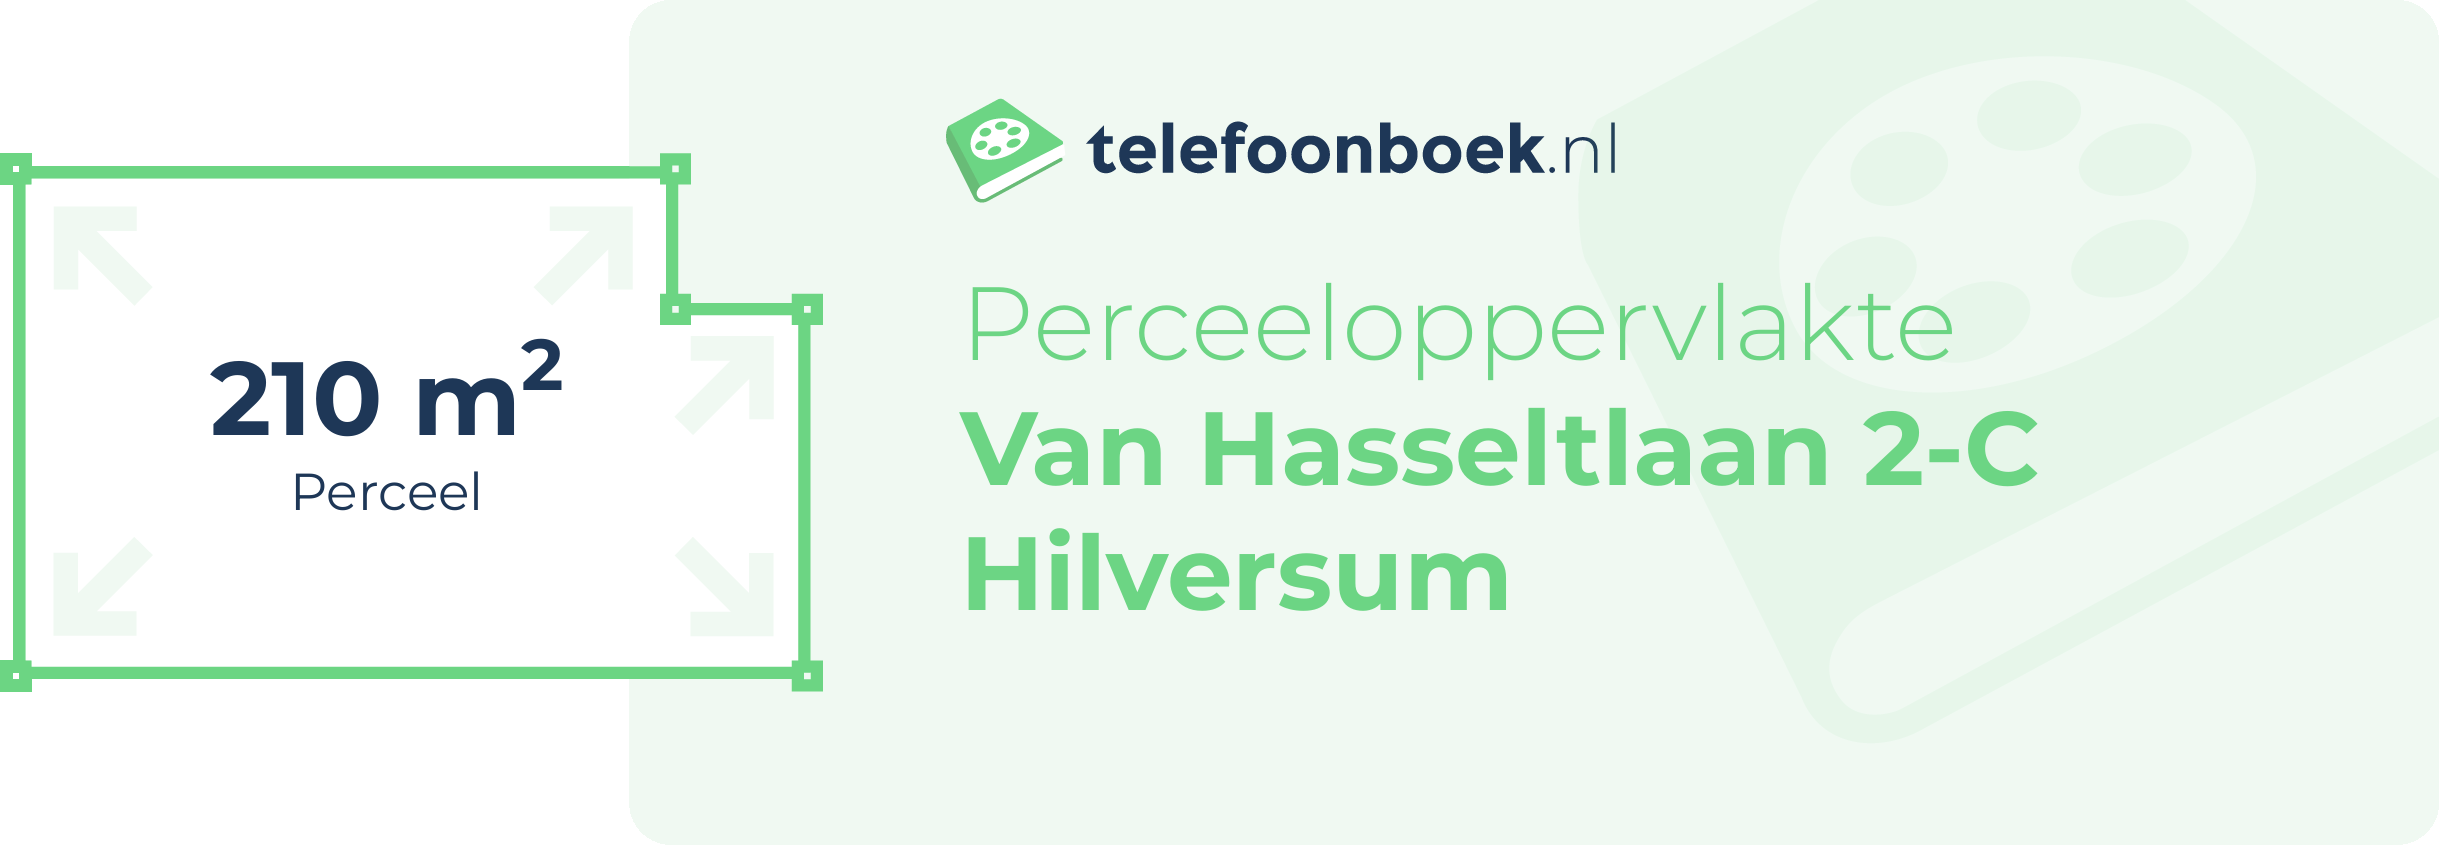 Perceeloppervlakte Van Hasseltlaan 2-C Hilversum